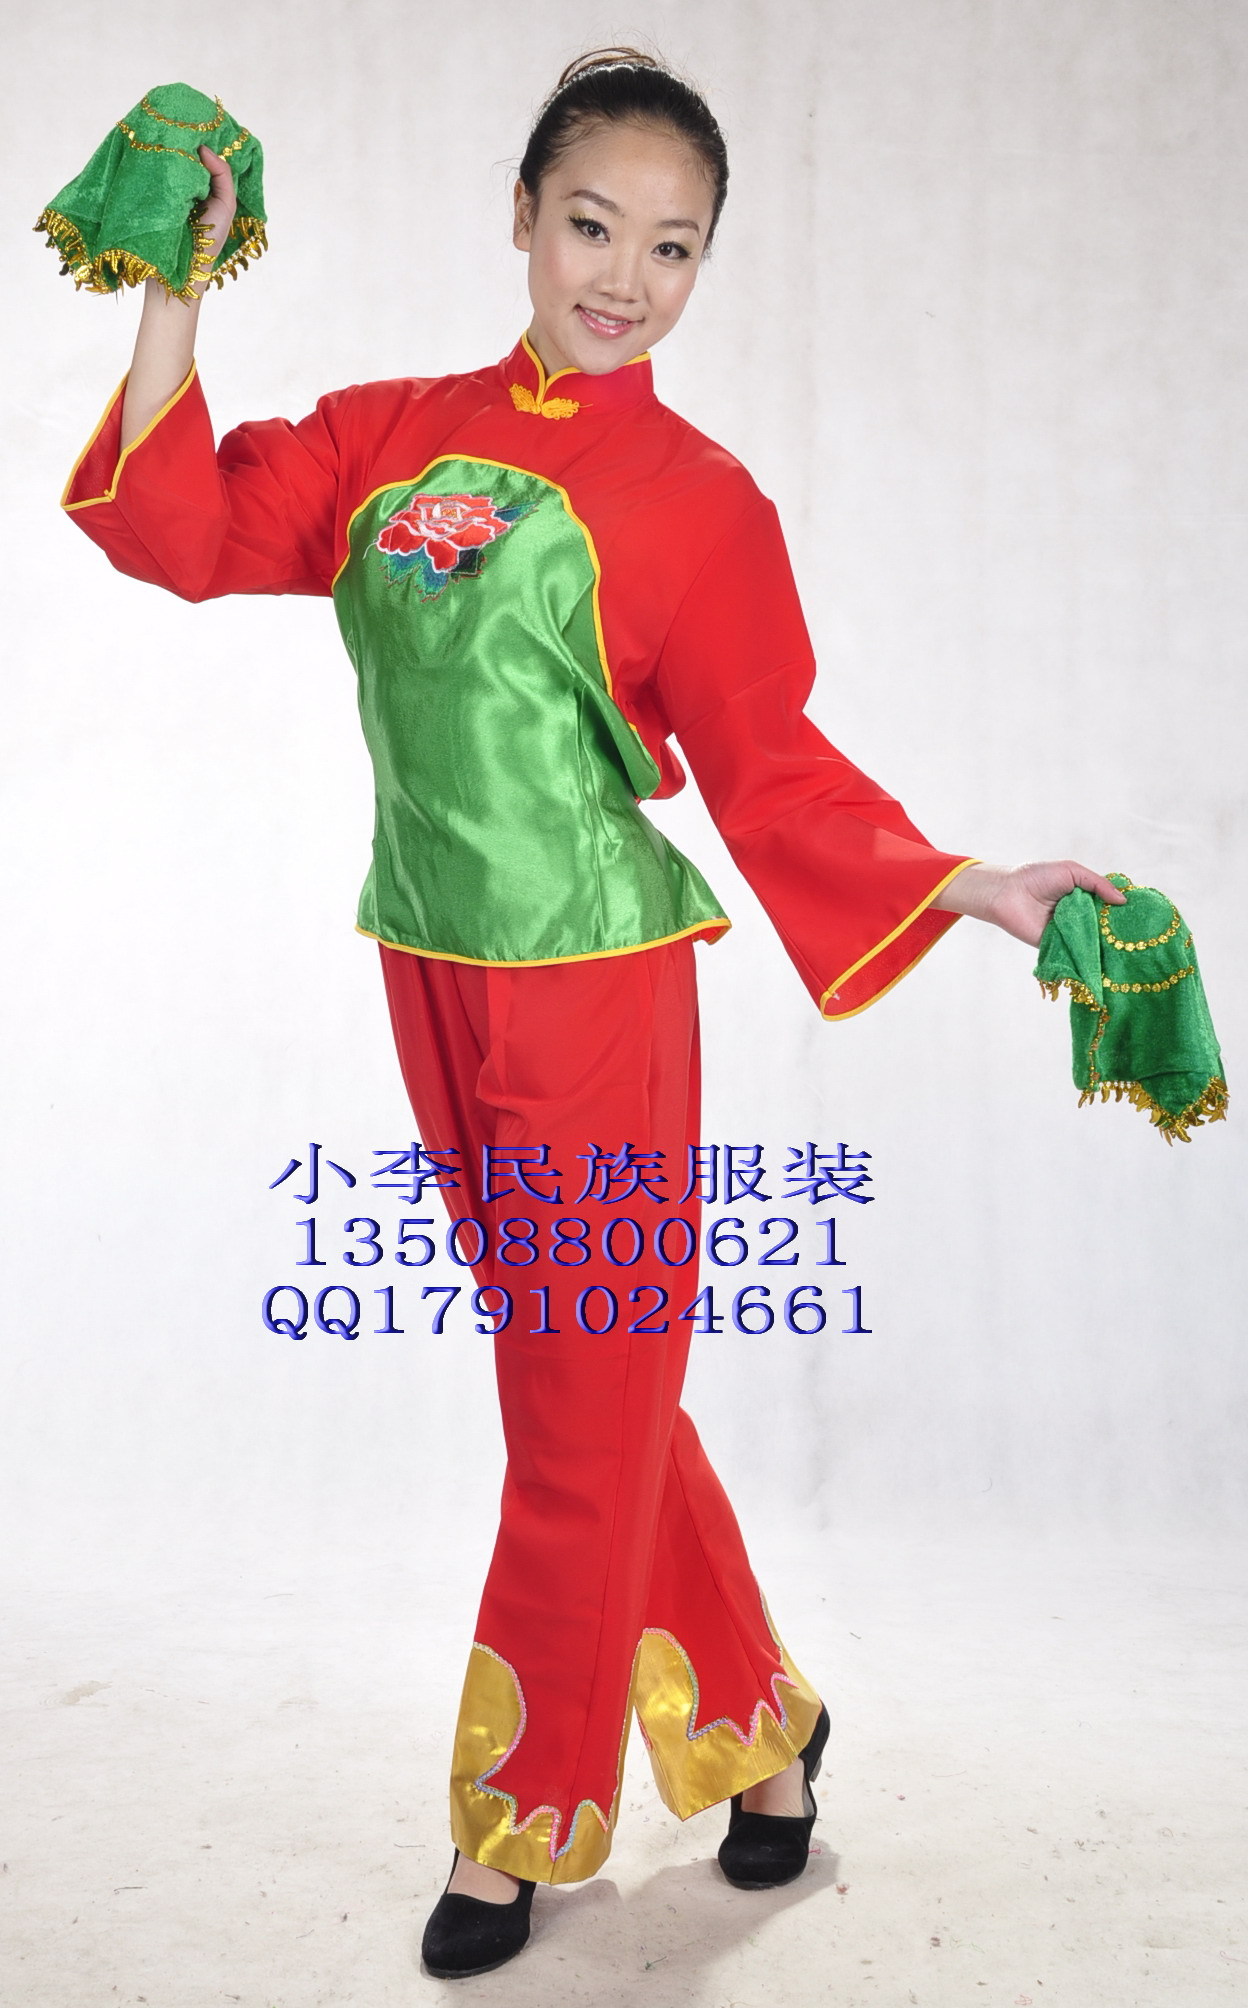 绿胸大牡丹秧歌服/少数民族舞台表演服装/舞蹈演出服装/扇子舞